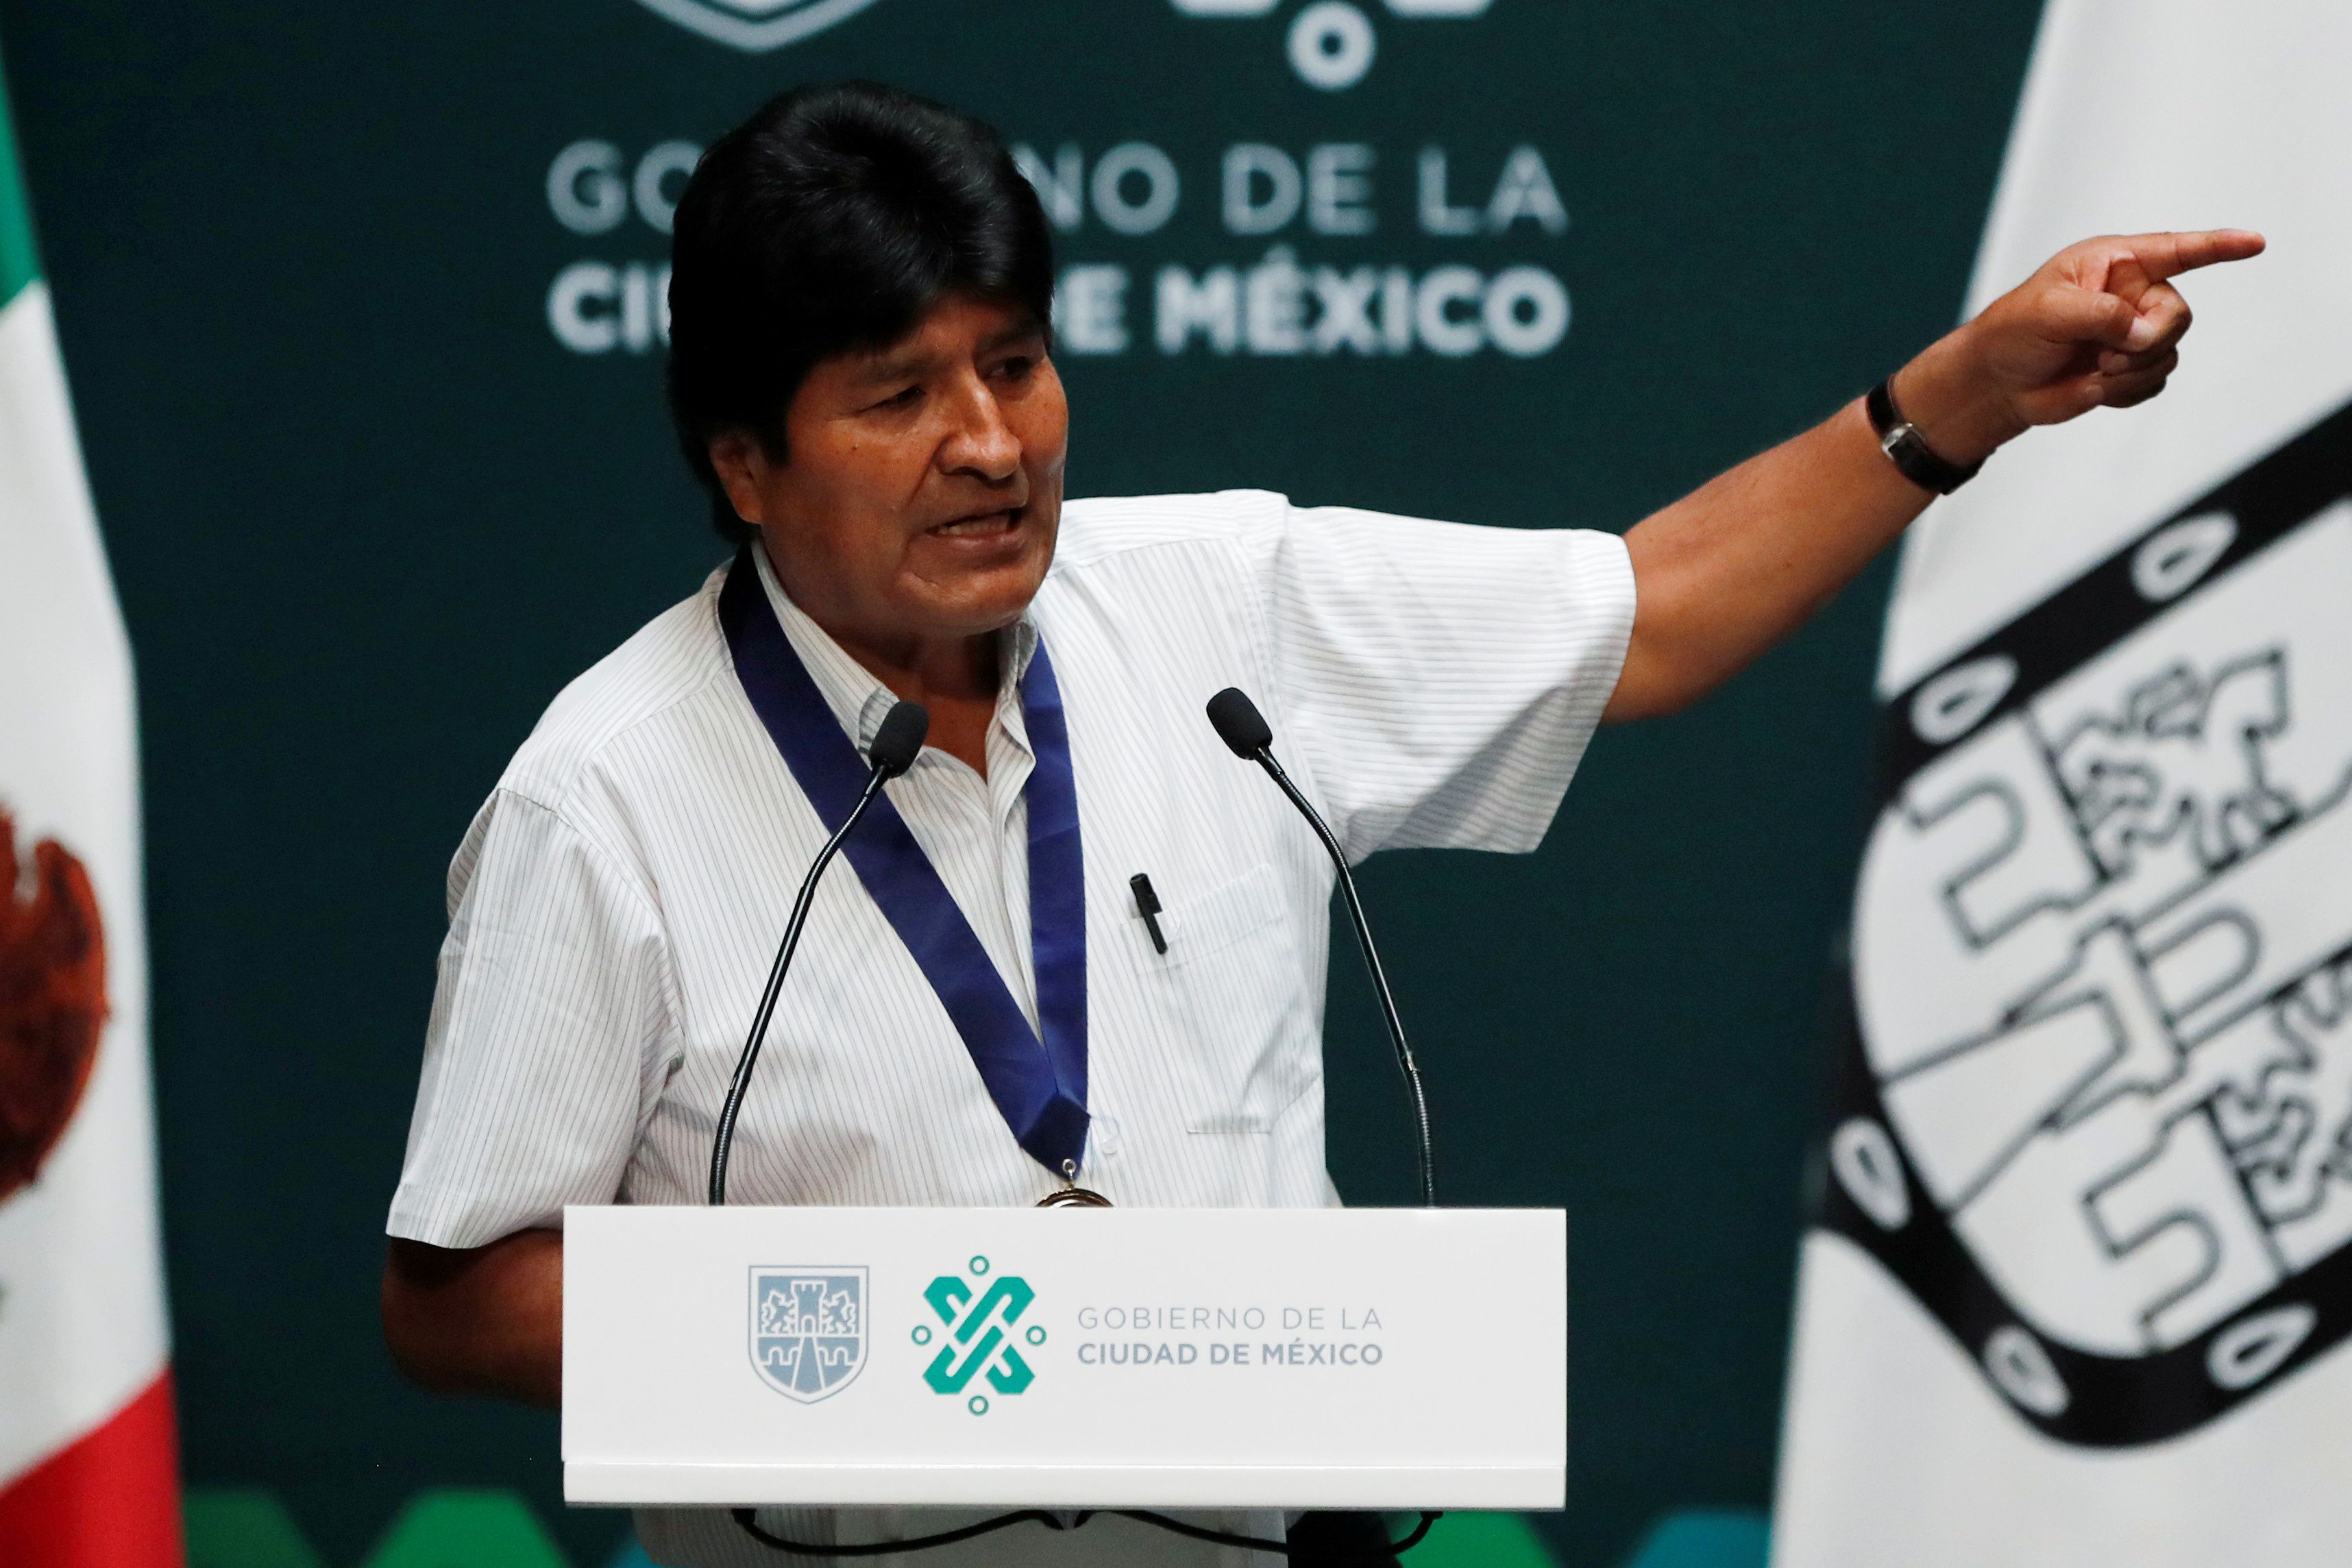 La renuncia de Evo Morales en Bolivia generó diferencias entre los integrantes de Cambiemos. REUTERS/Carlos Jasso